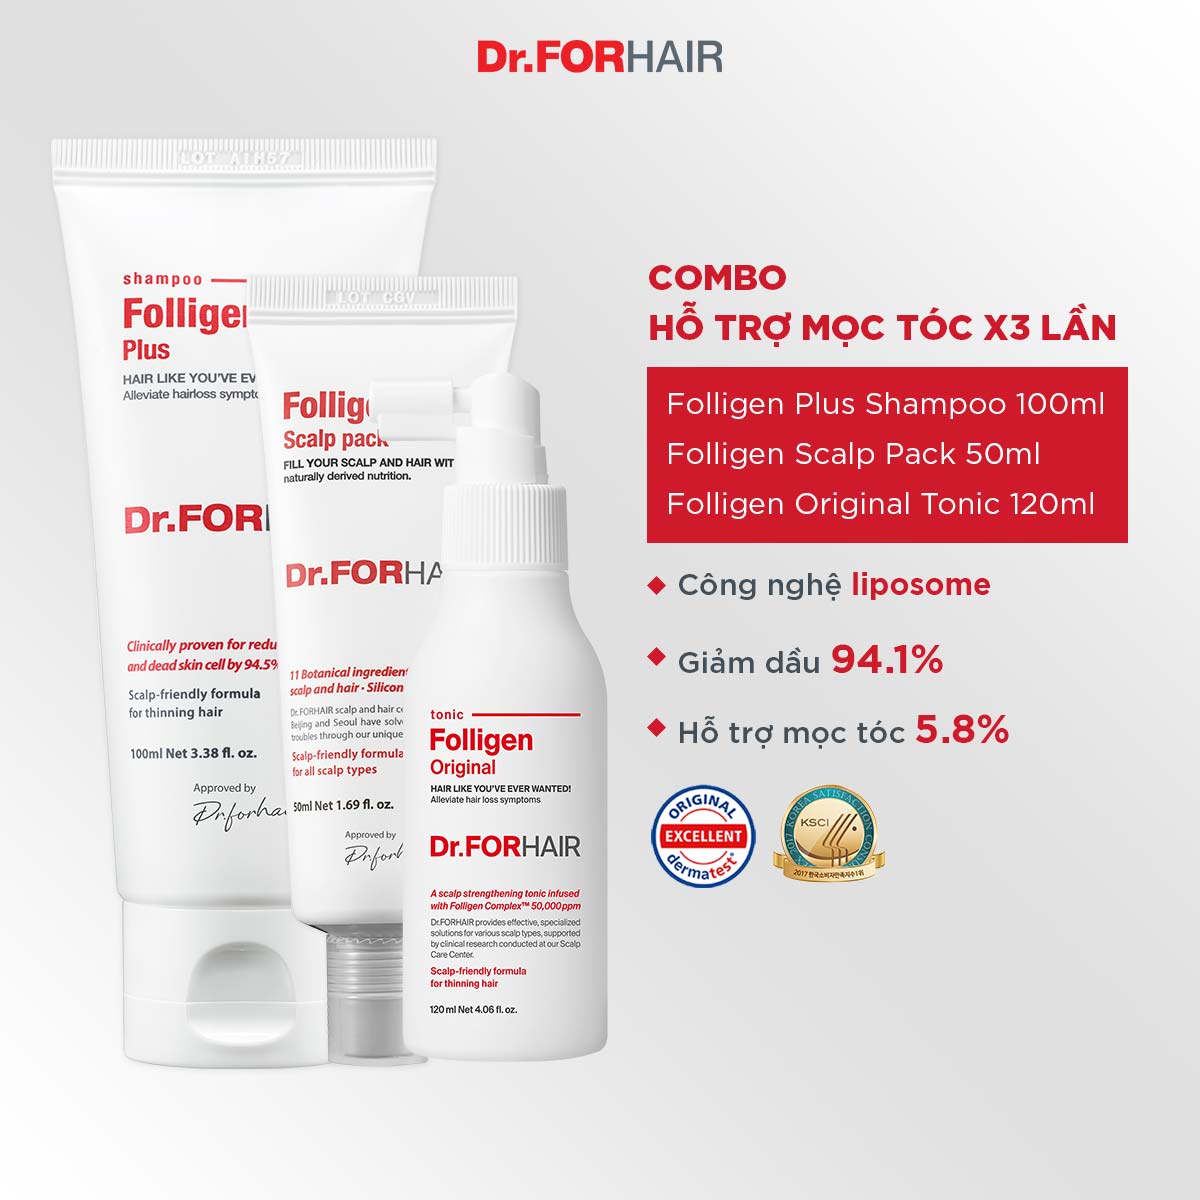 Bộ gội xả dưỡng mini hỗ trợ mọc tóc, nuôi dưỡng da đầu khỏe mạnh của Dr.FORHAIR FOLLIGEN PLUS x FOLLIGEN SCALP PACK x FOLLIGEN ORIGINAL TONIC